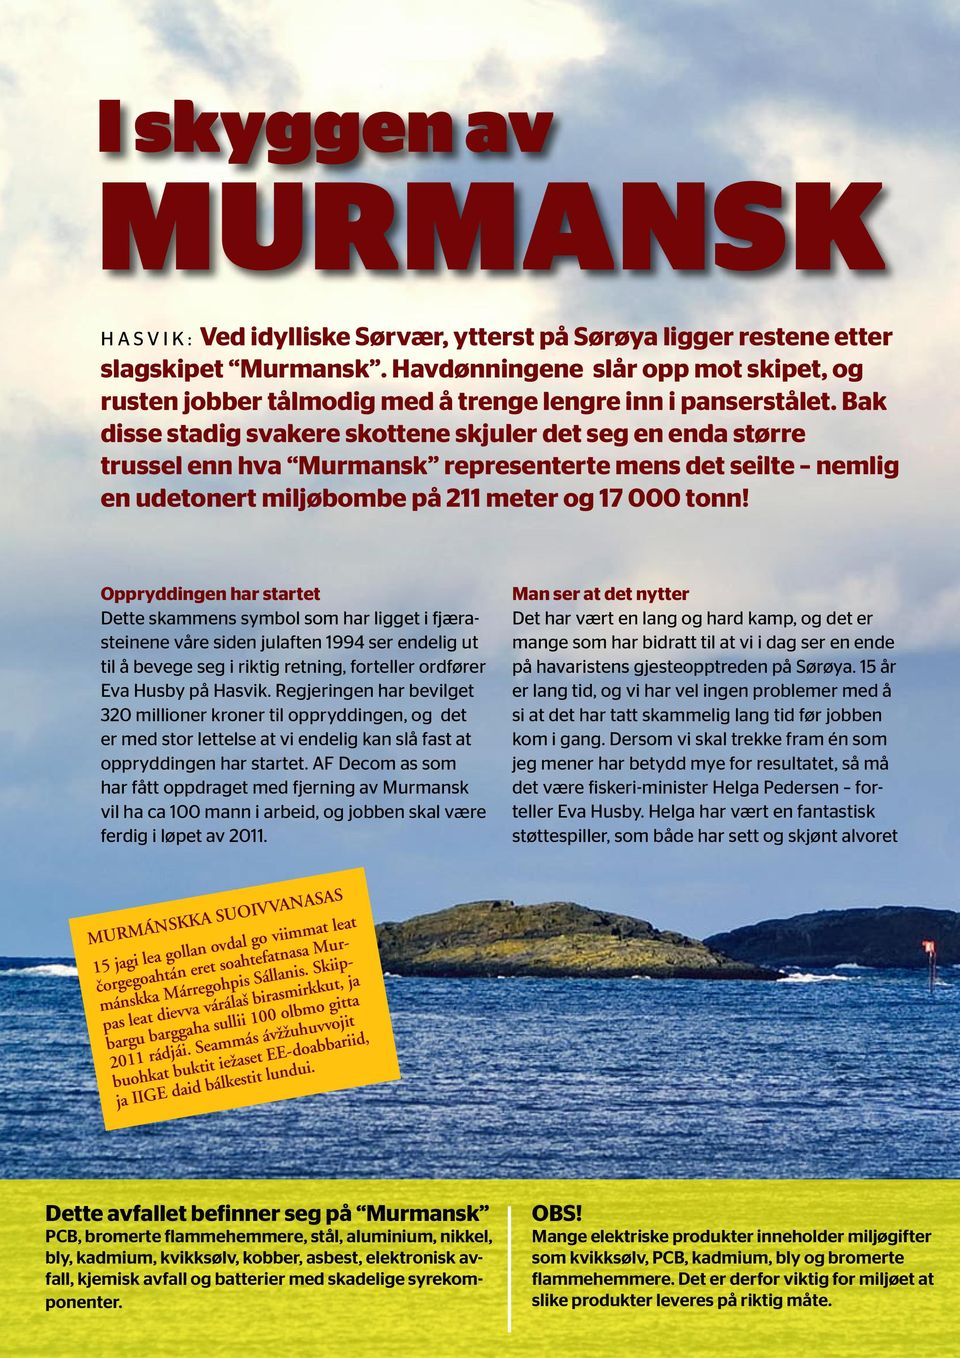 Bak disse stadig svakere skottene skjuler det seg en enda større trussel enn hva Murmansk representerte mens det seilte nemlig en udetonert miljøbombe på 211 meter og 17 000 tonn!